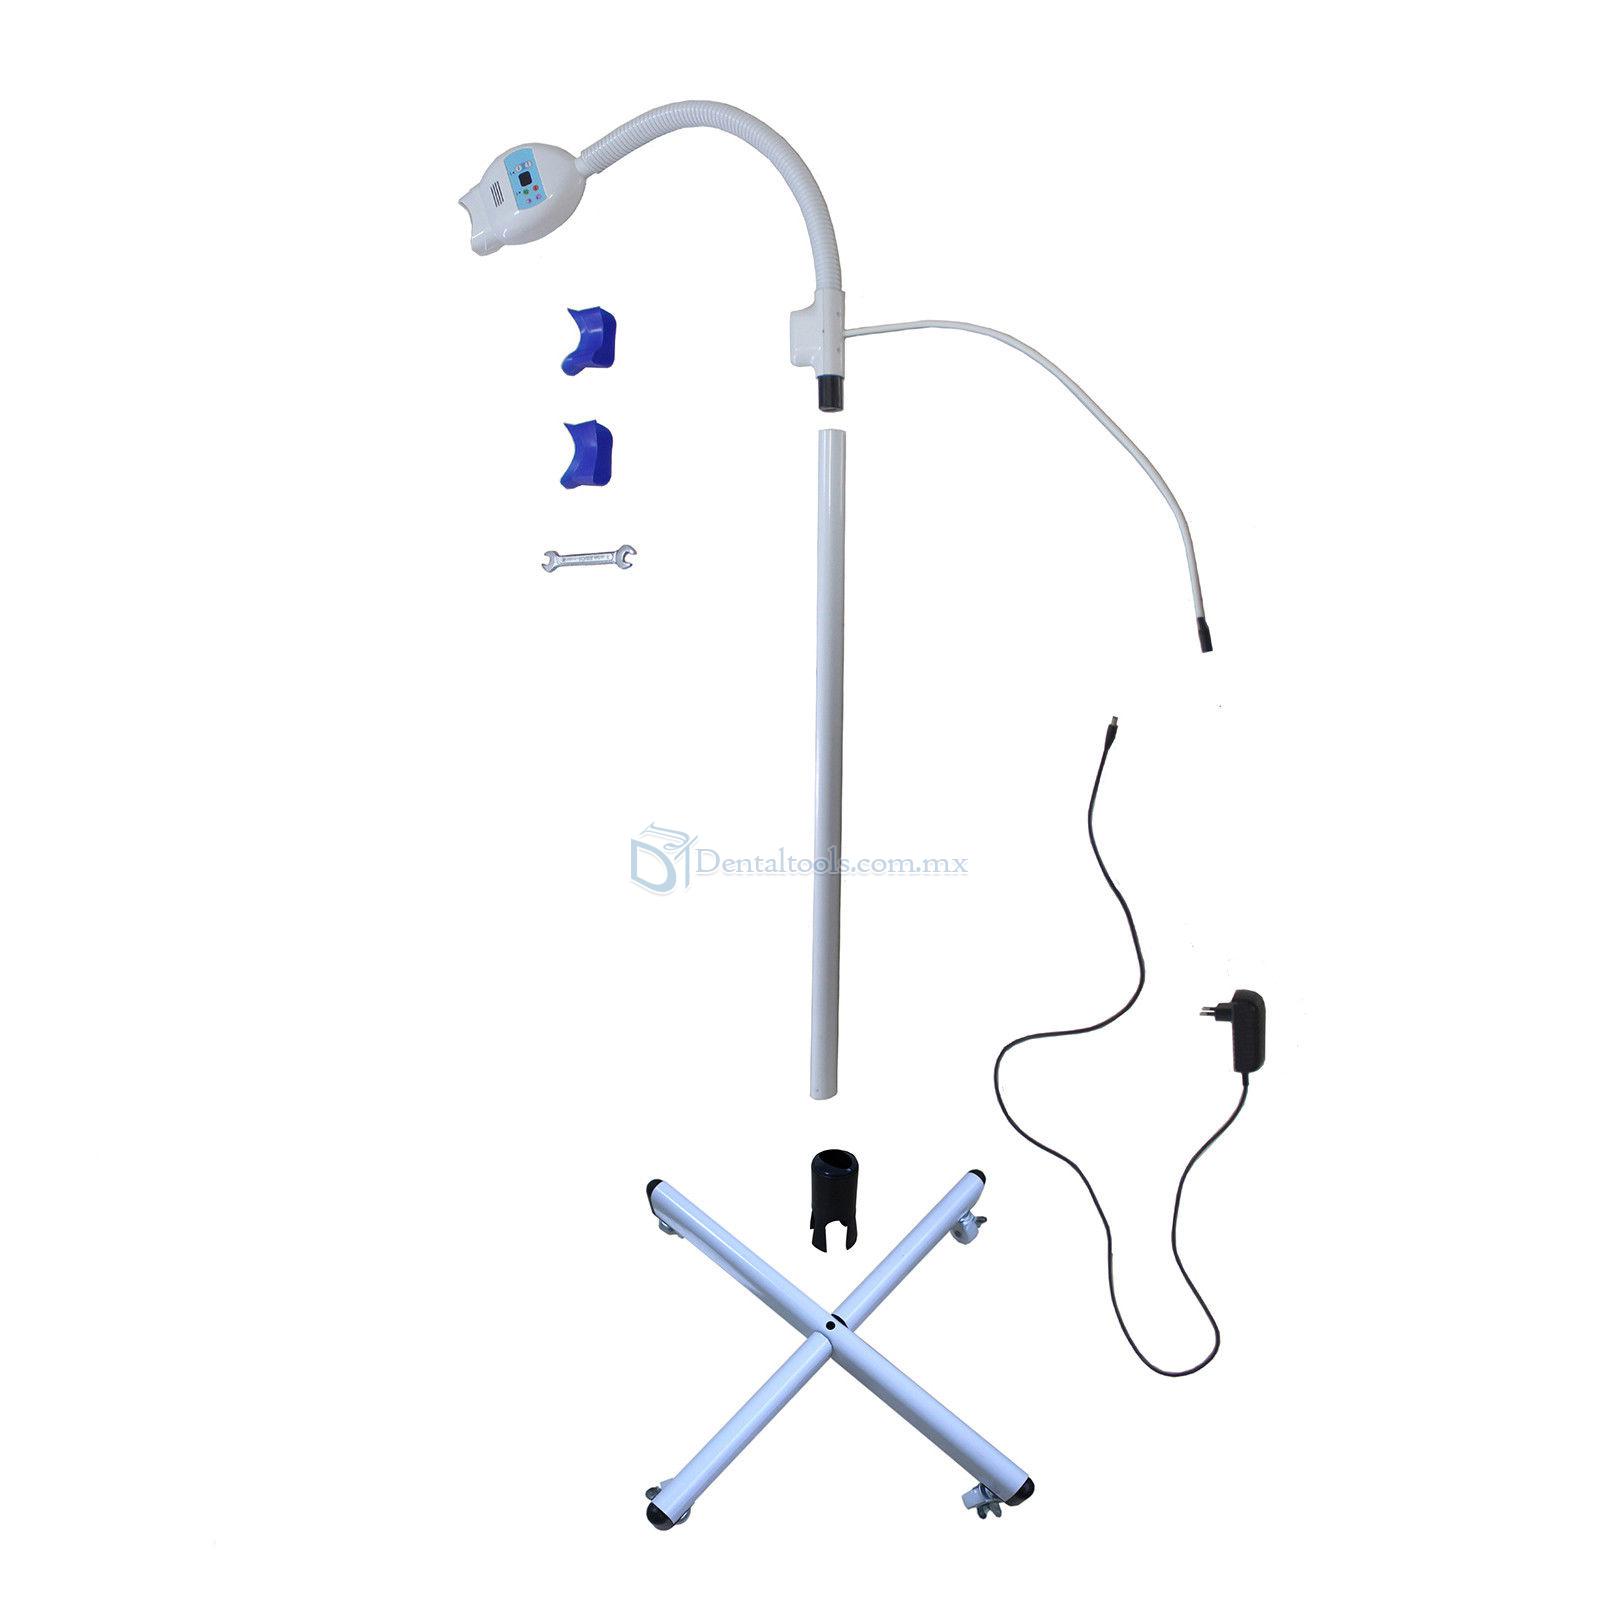 Lámpara de blanqueamiento dental móvile con ruedas para salón de belleza y clínica dental